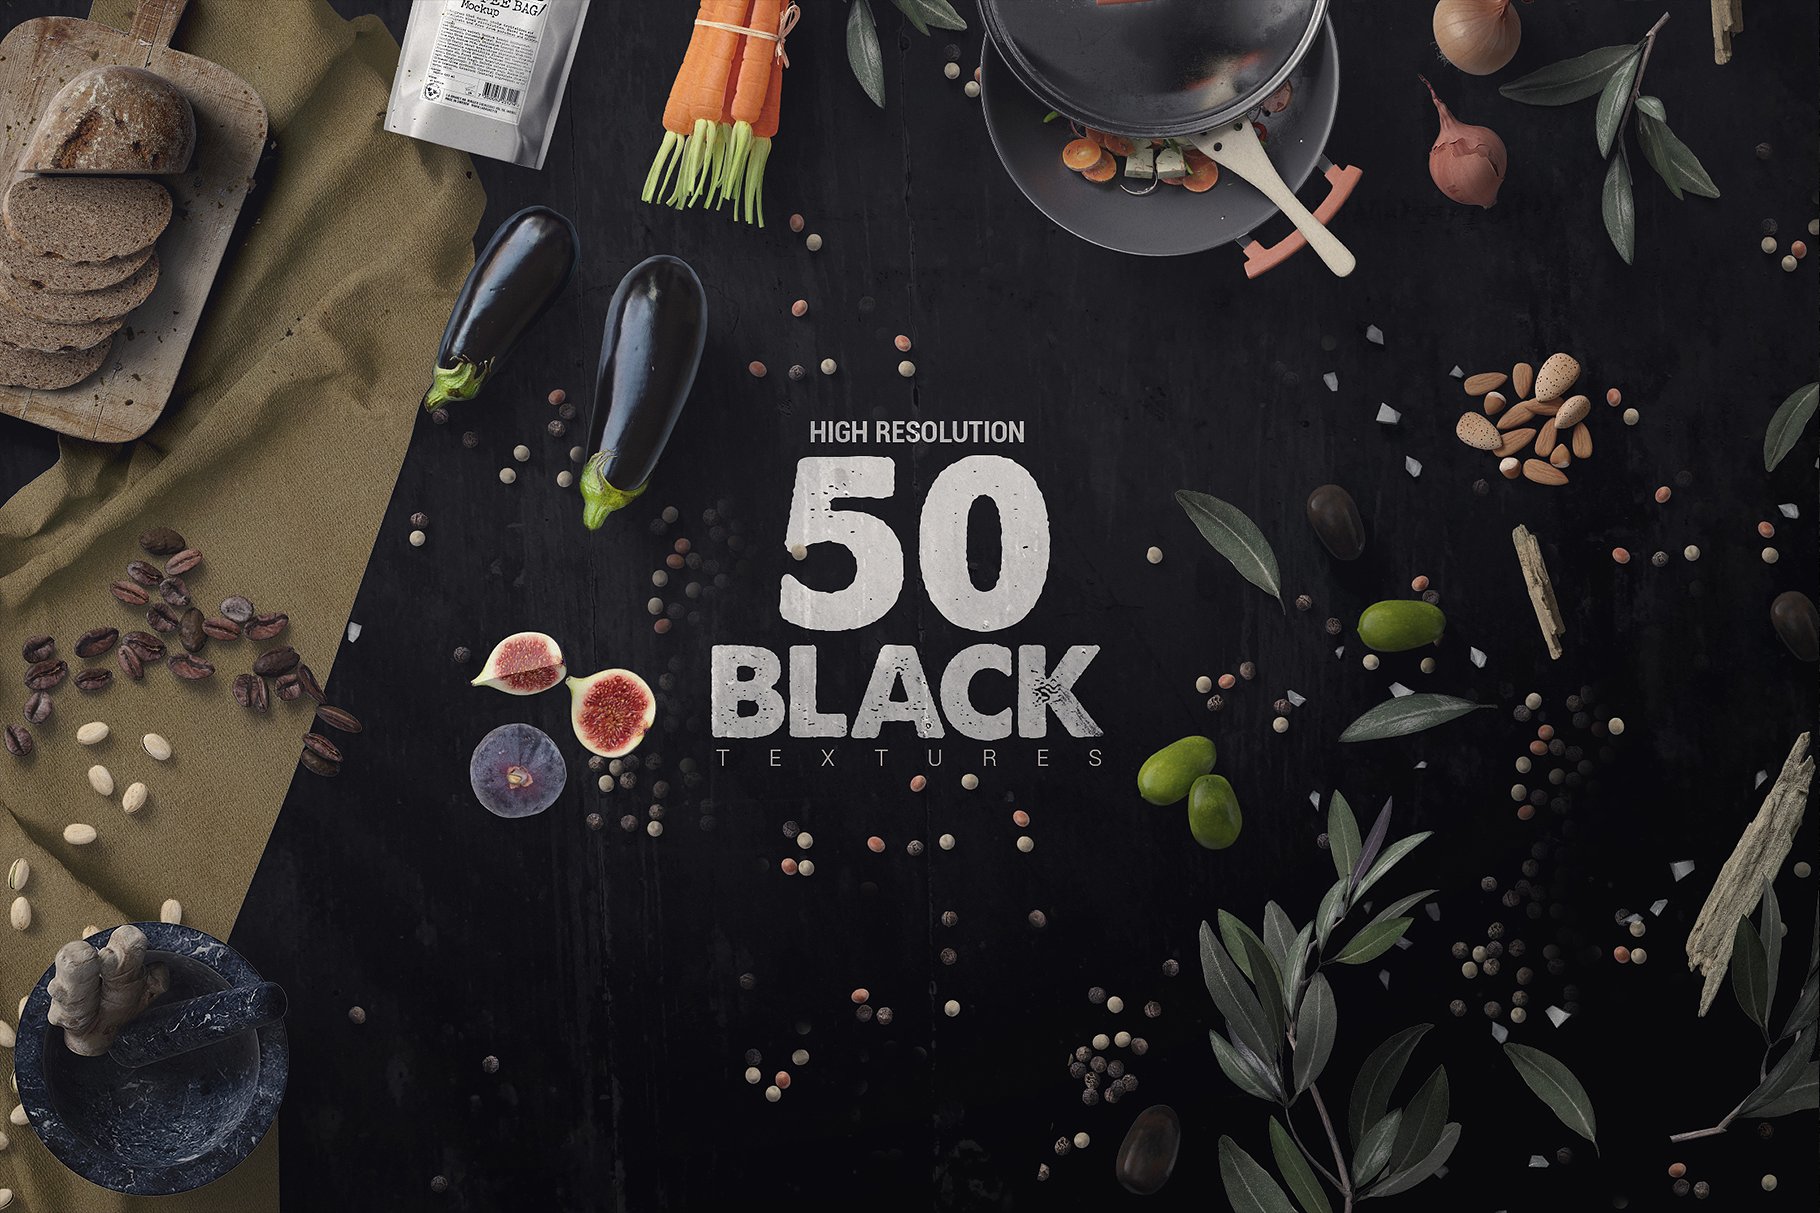 50款高品质的黑色纹理素材 50 Black Textures vol.4 [jpg]插图6